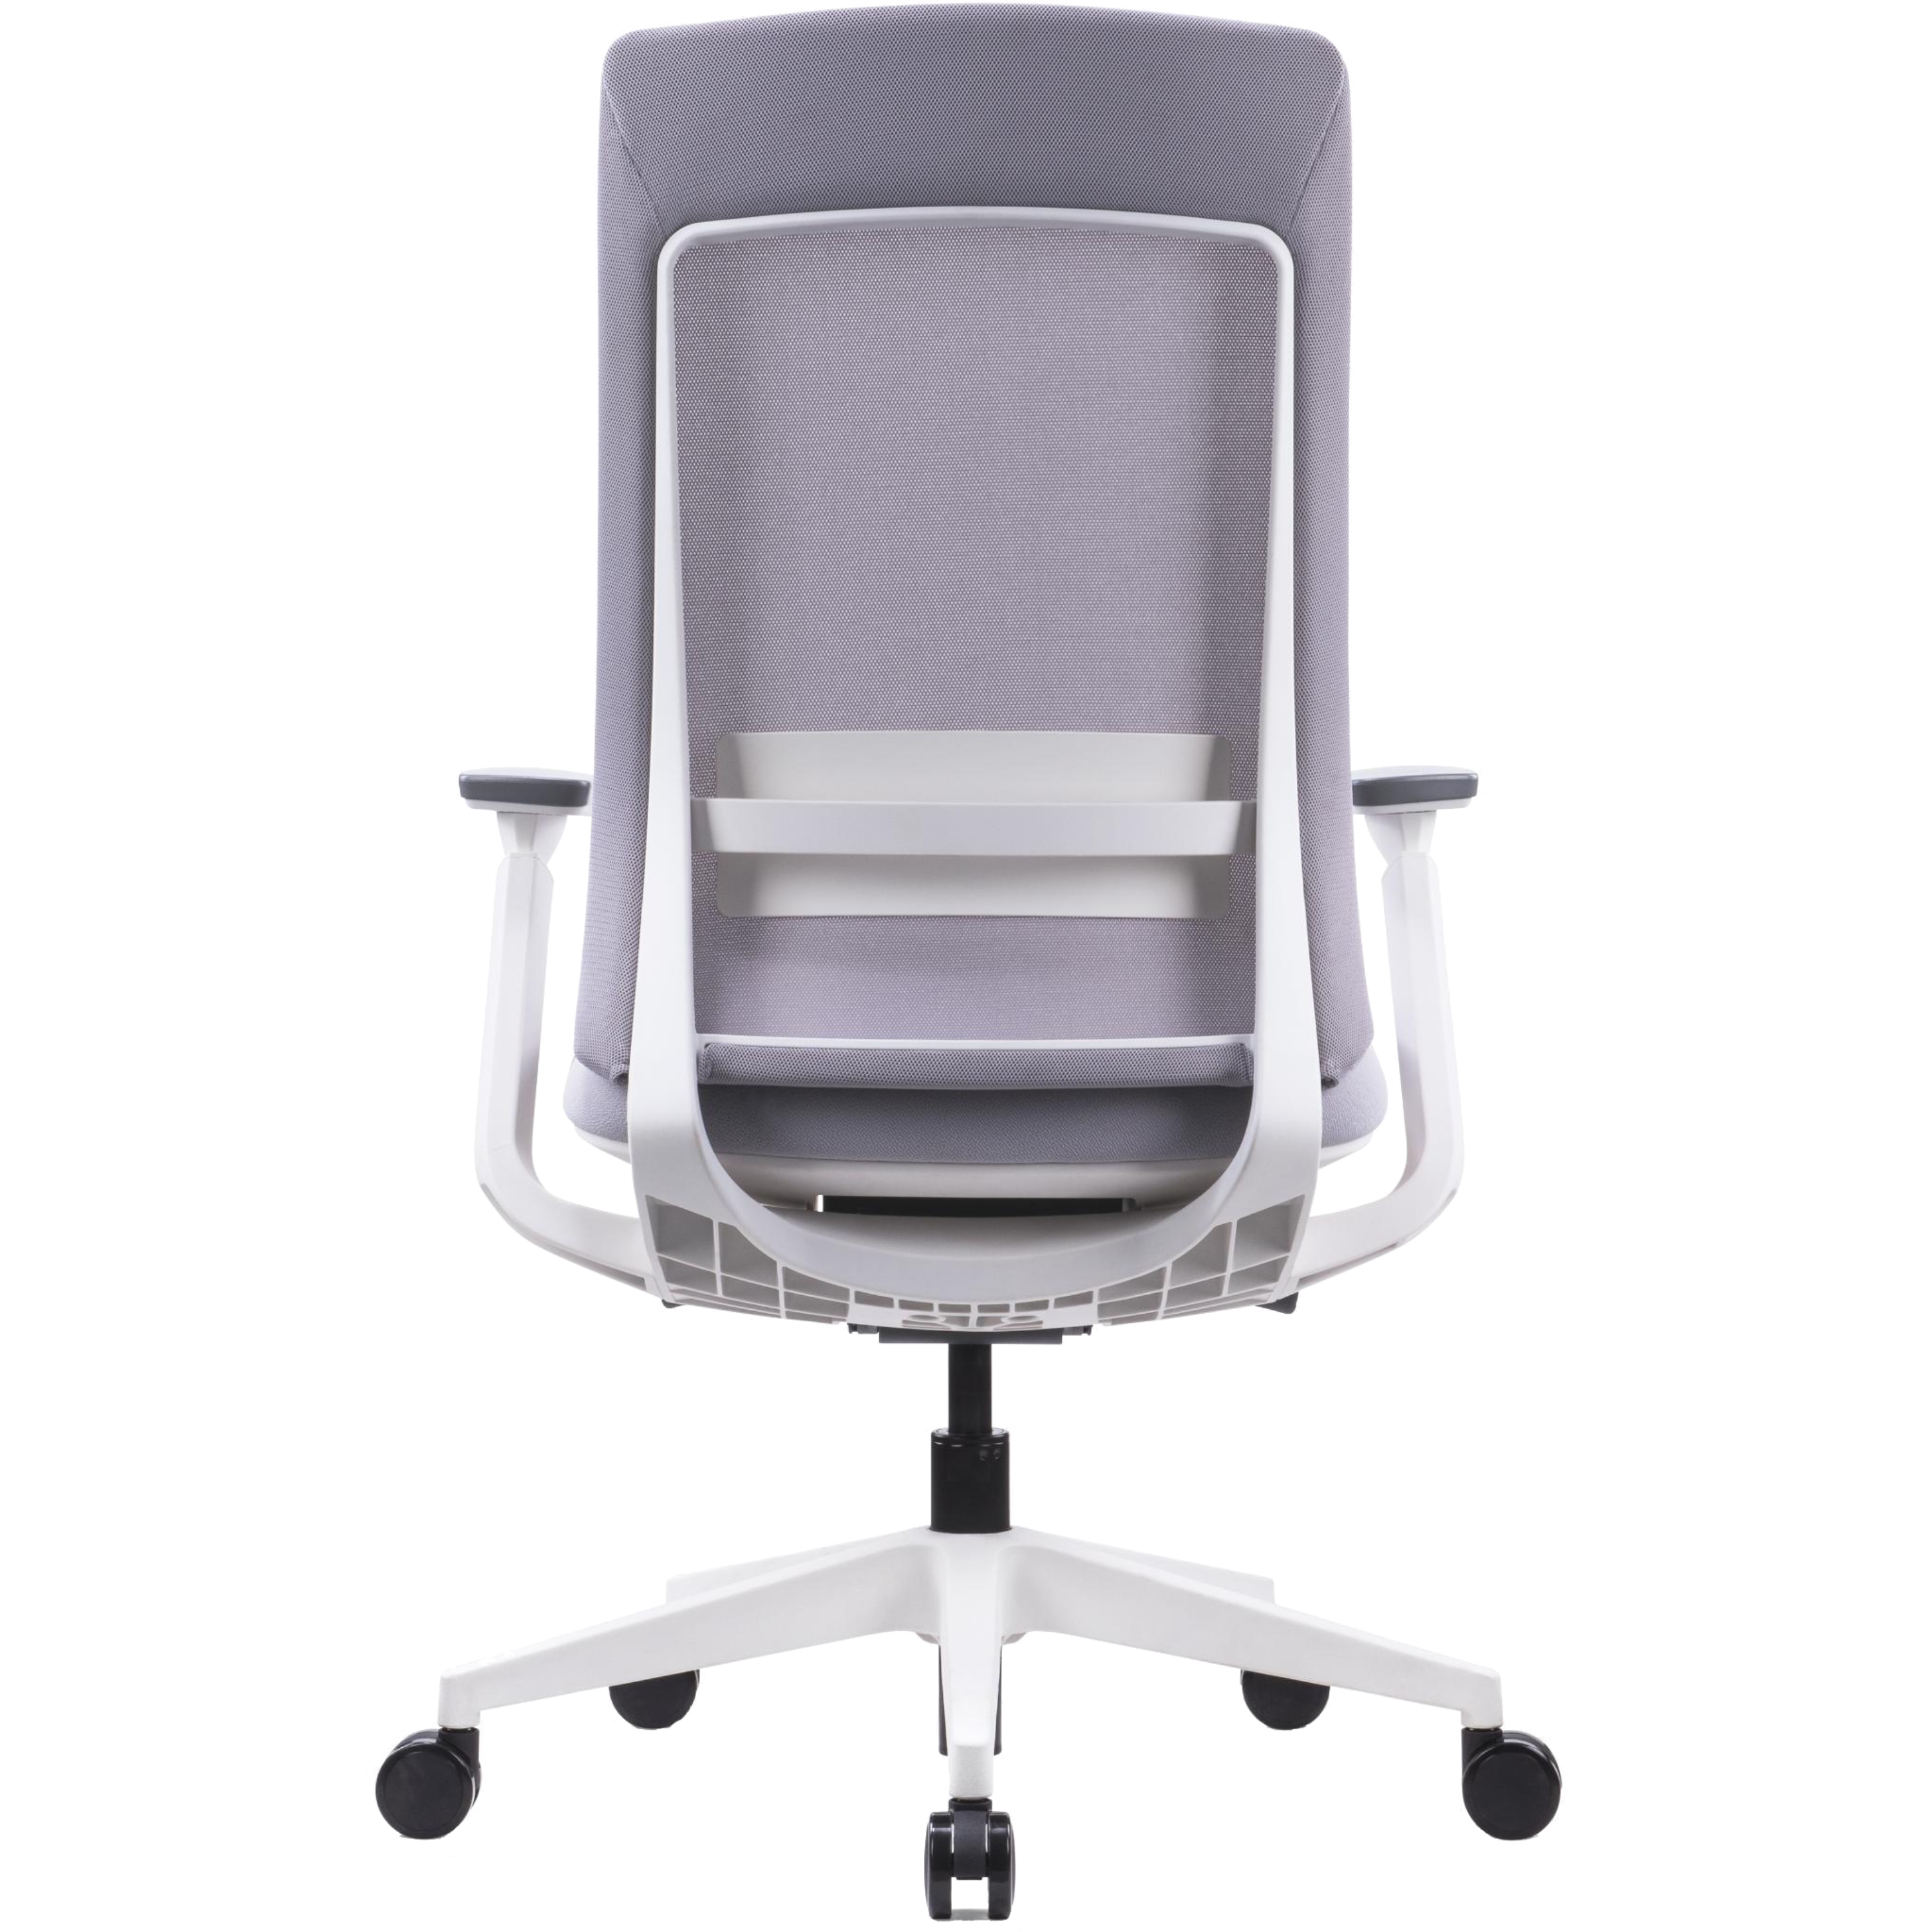 כיסא ארגונומי רב תכליתי לישיבה ממושכת דגם אלביט SitPlus - צבע לבן